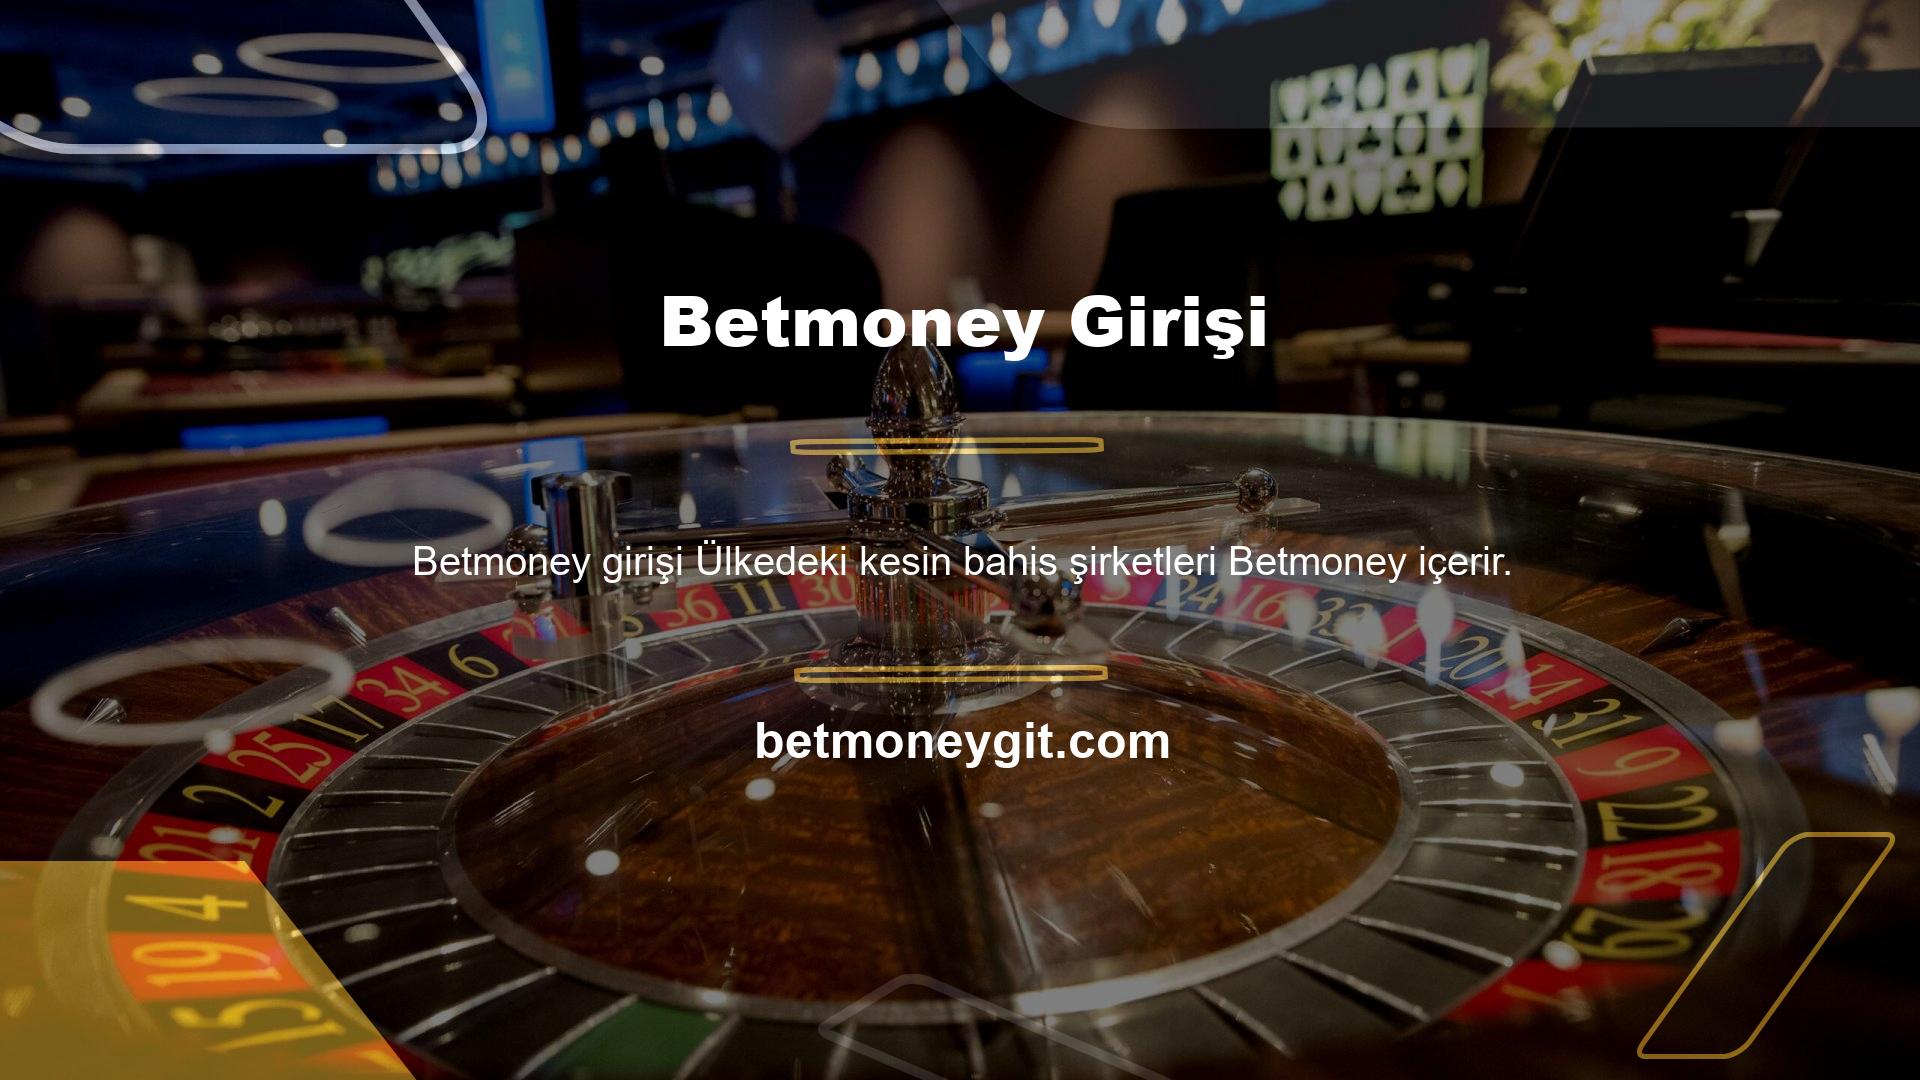 Betmoney, internetteki tüm blackjack oyunlarını yöneten kişisel olarak sevilen ve değer verilen şirketlerden biridir